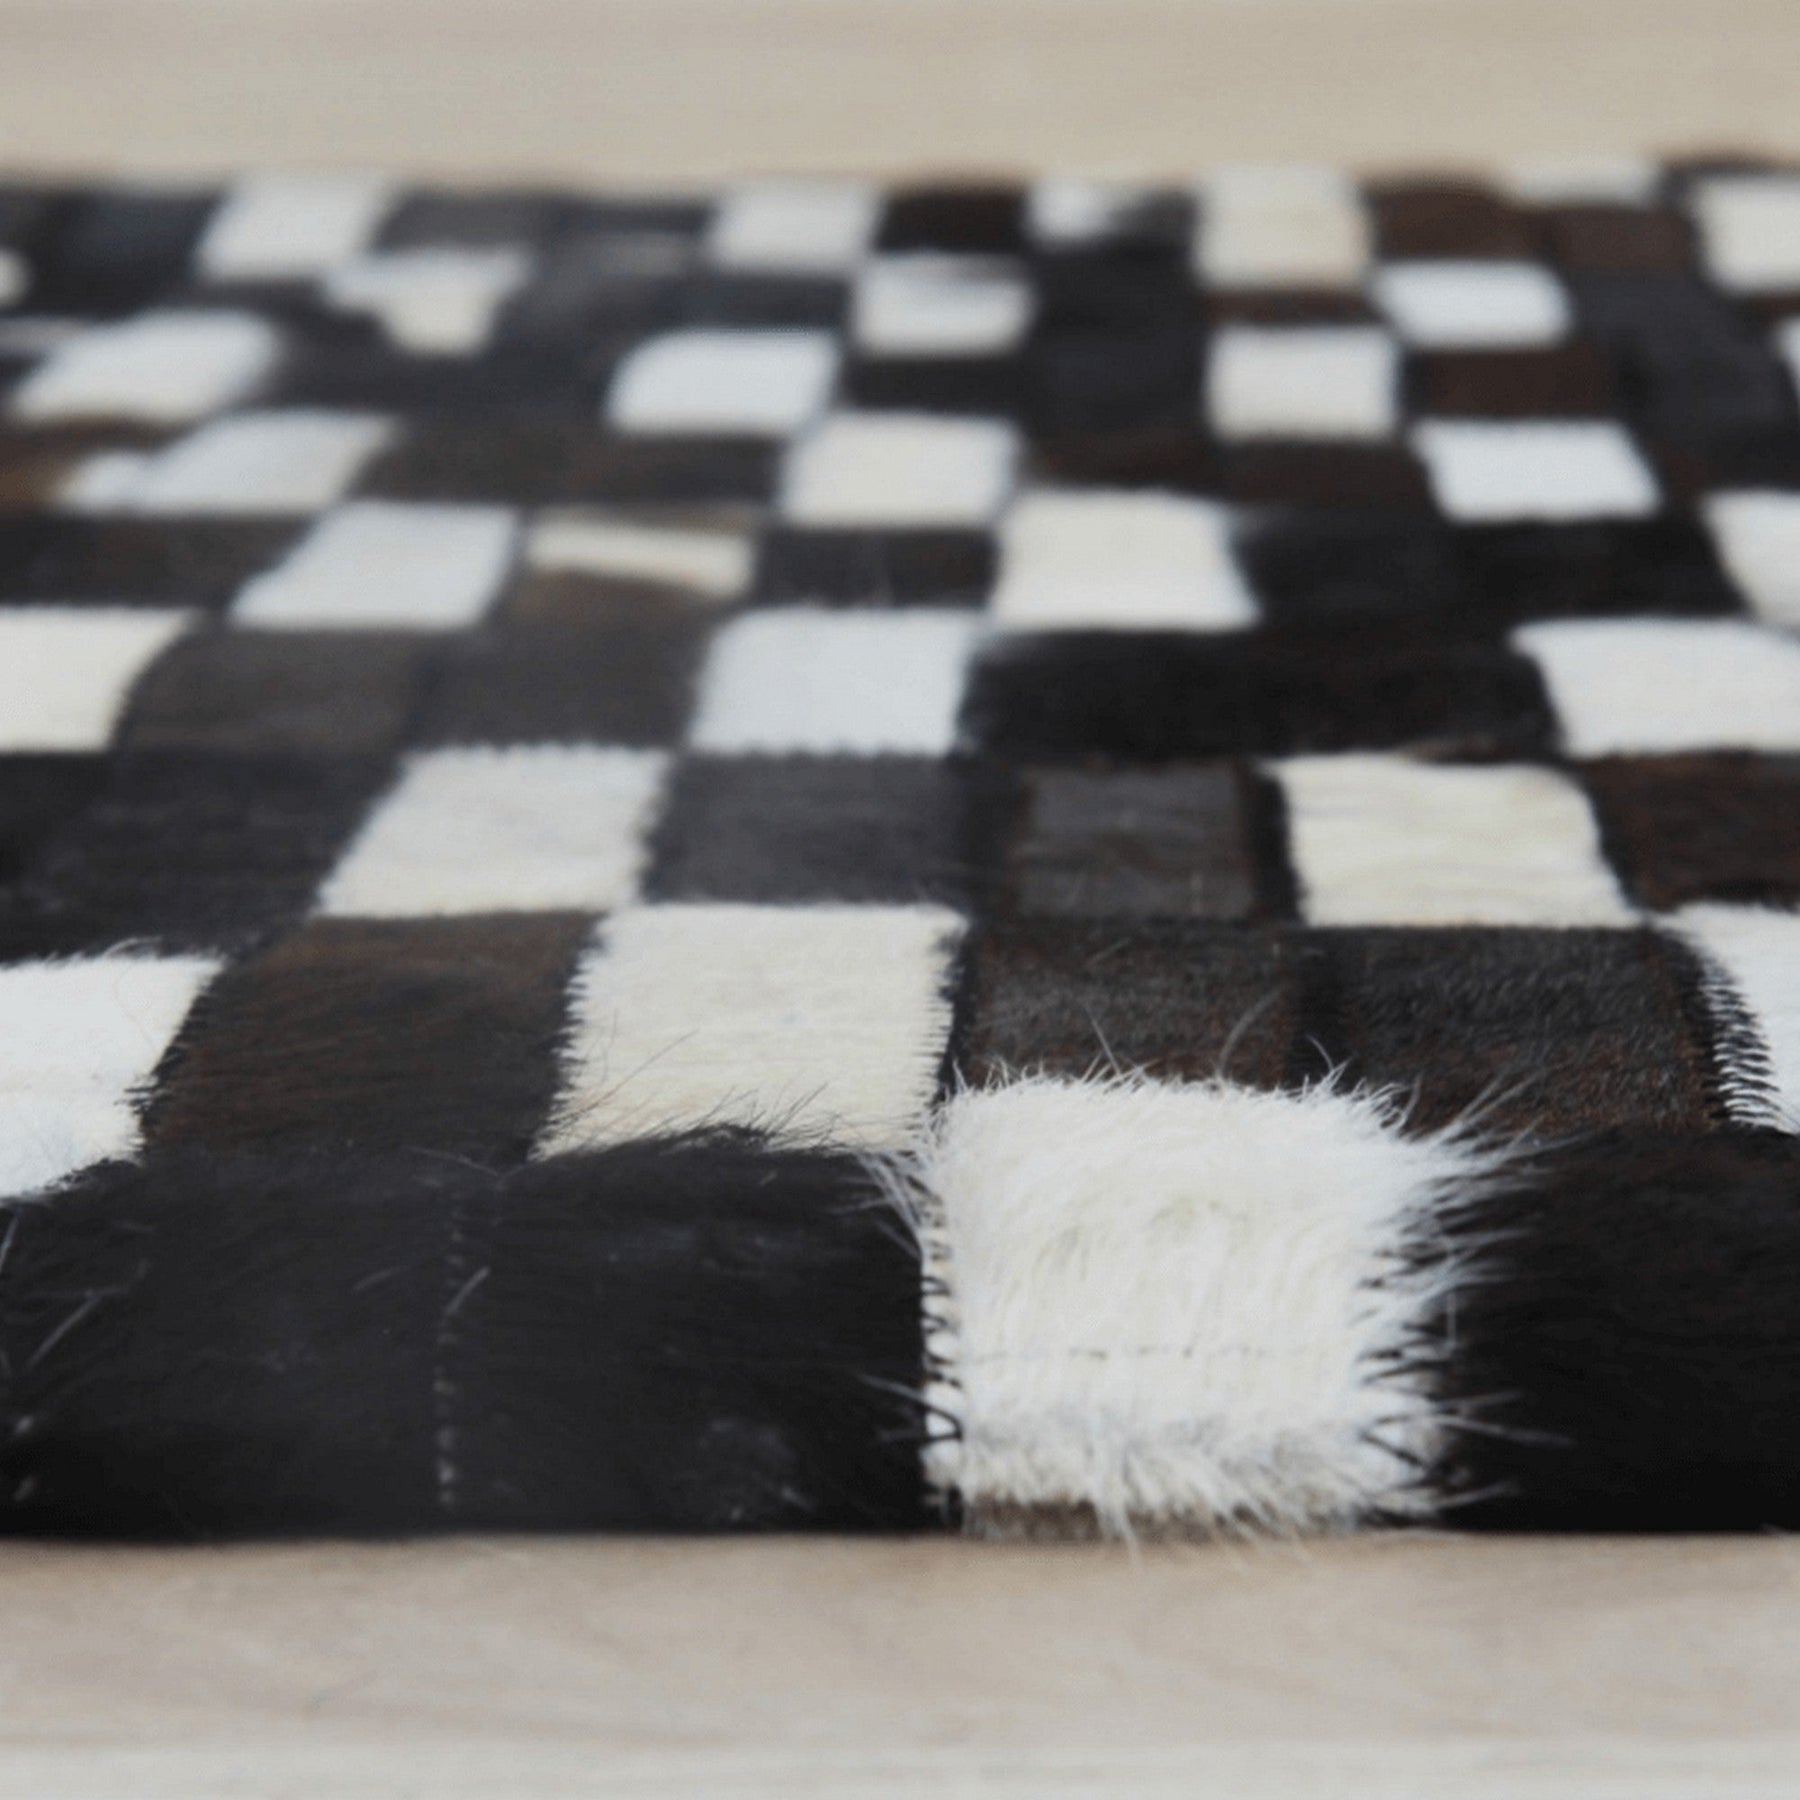 Covor de lux PIELE DE VITĂ TIP 6 , maro/negru/alb, patchwork, 171x240